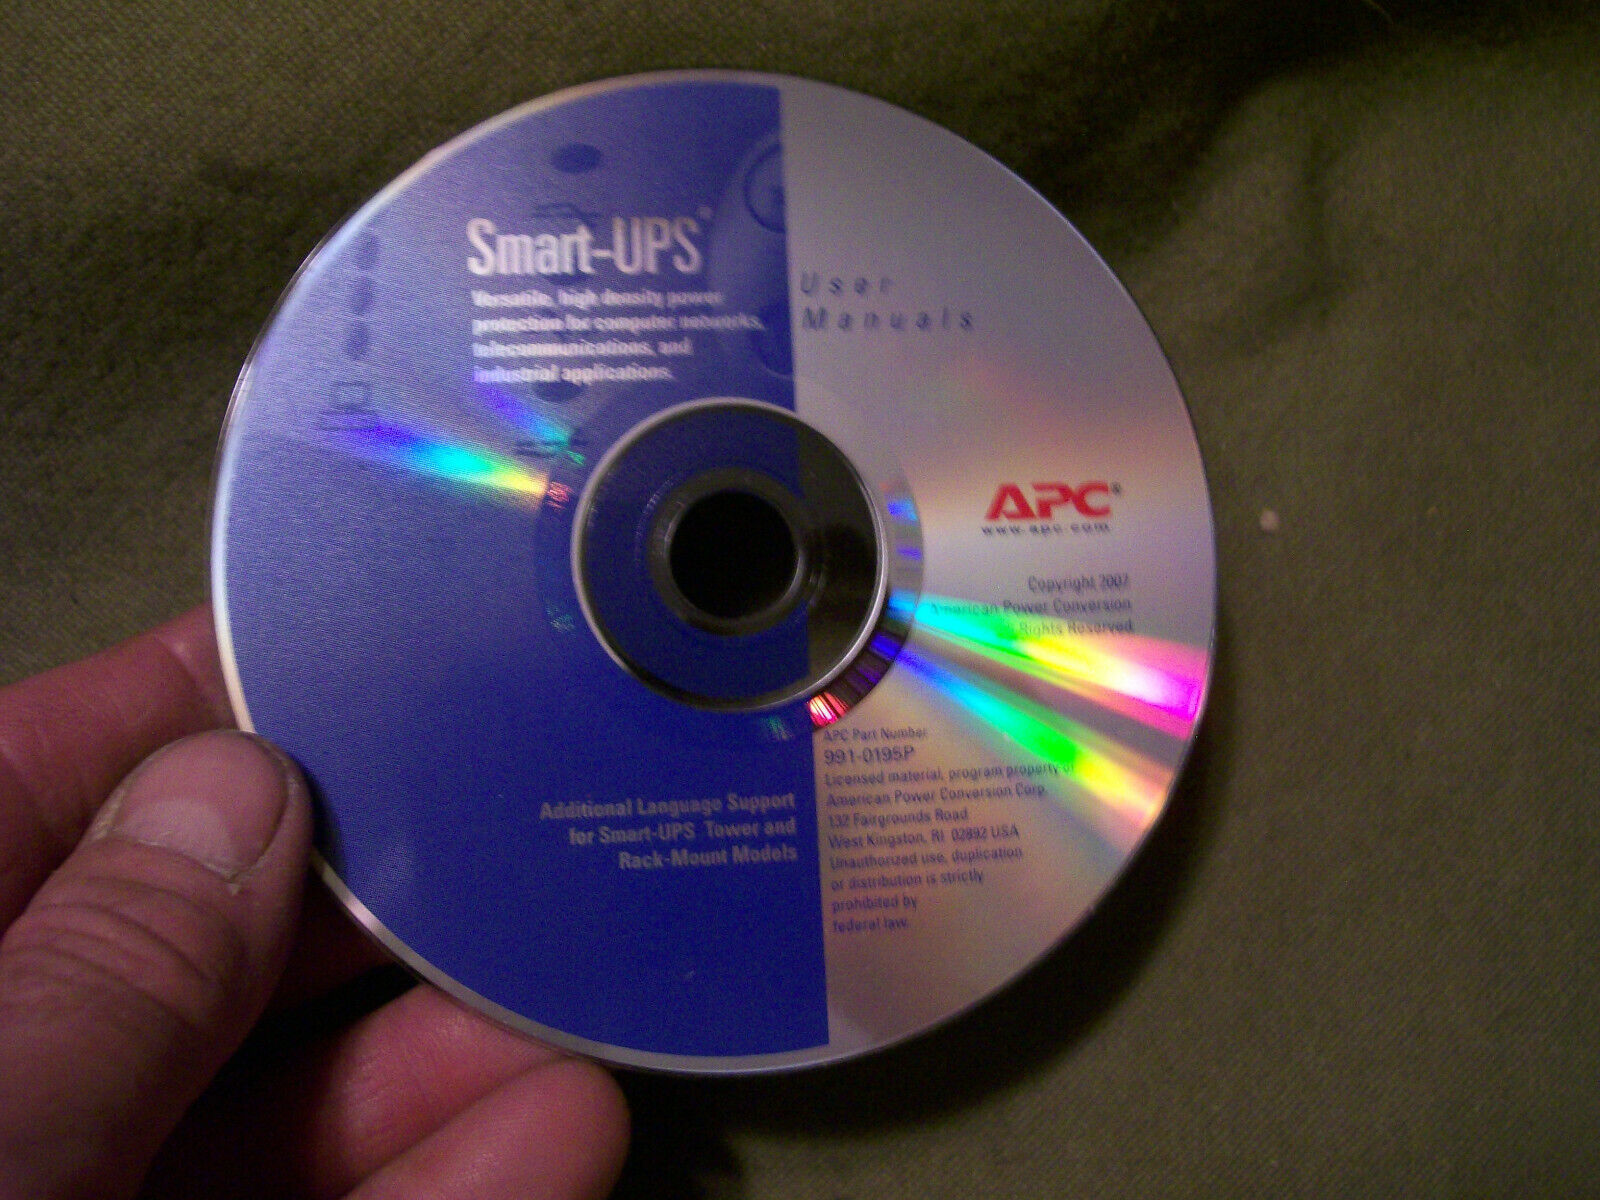 APC Smart-UPS User Manual CD-ROM Part No. 991-0195P